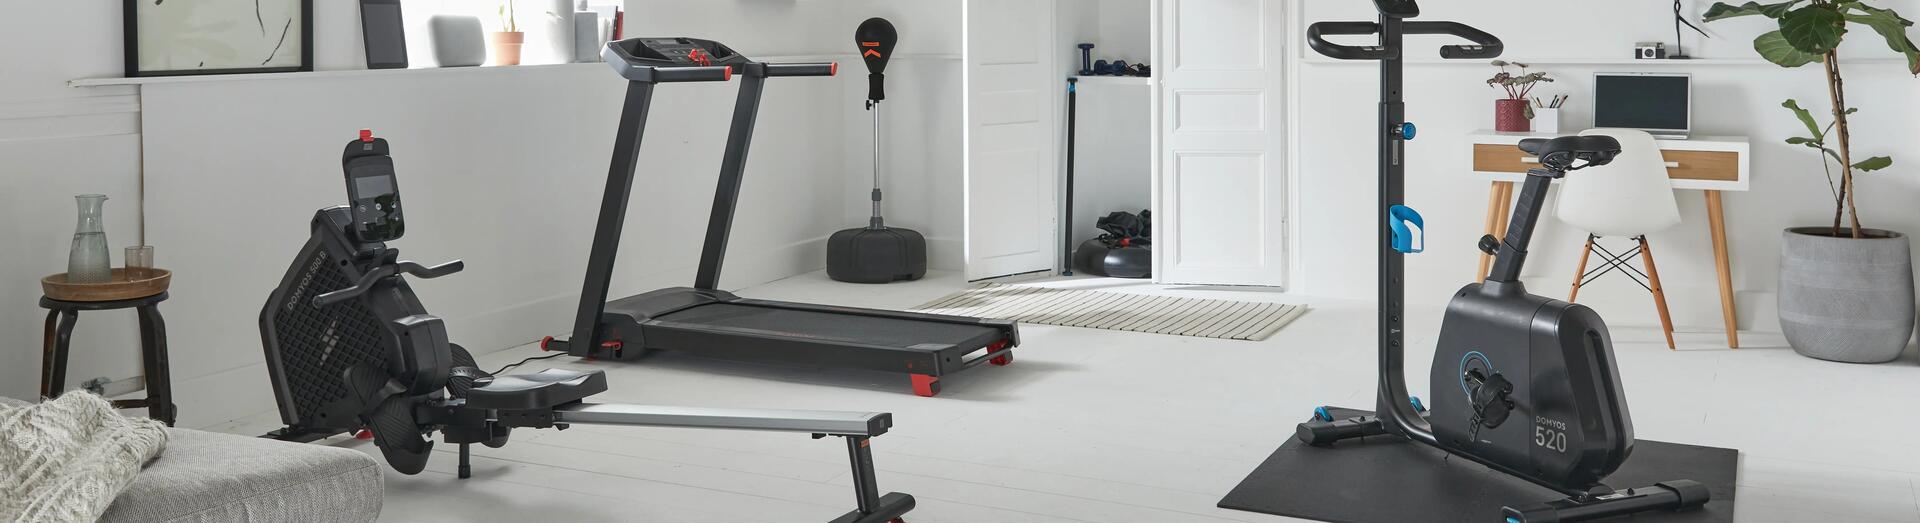 Hoe tover je jouw huis om tot een home gym?